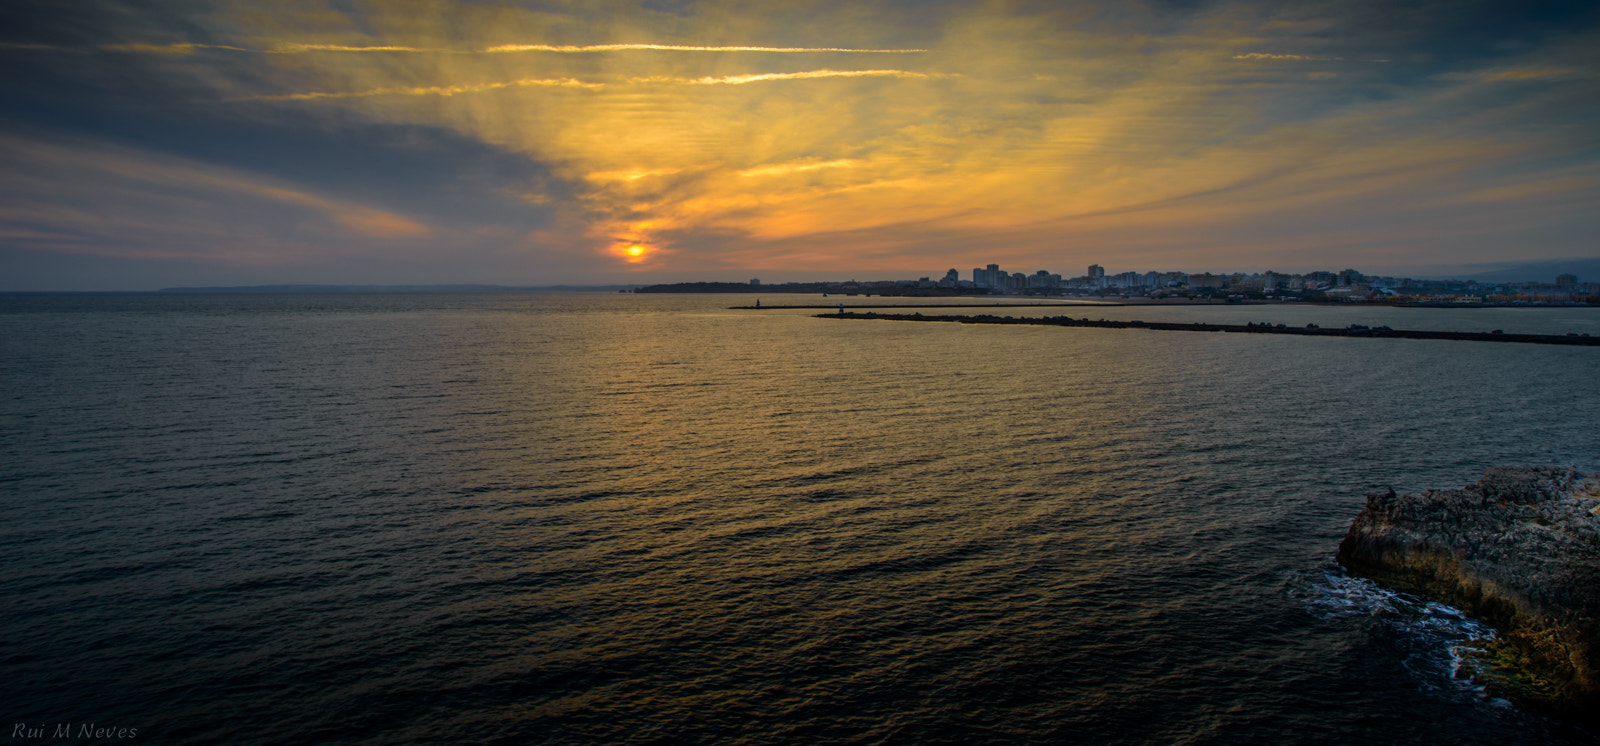 Nikon D800 sample photo. Sunset in carvoeiro, pt photography